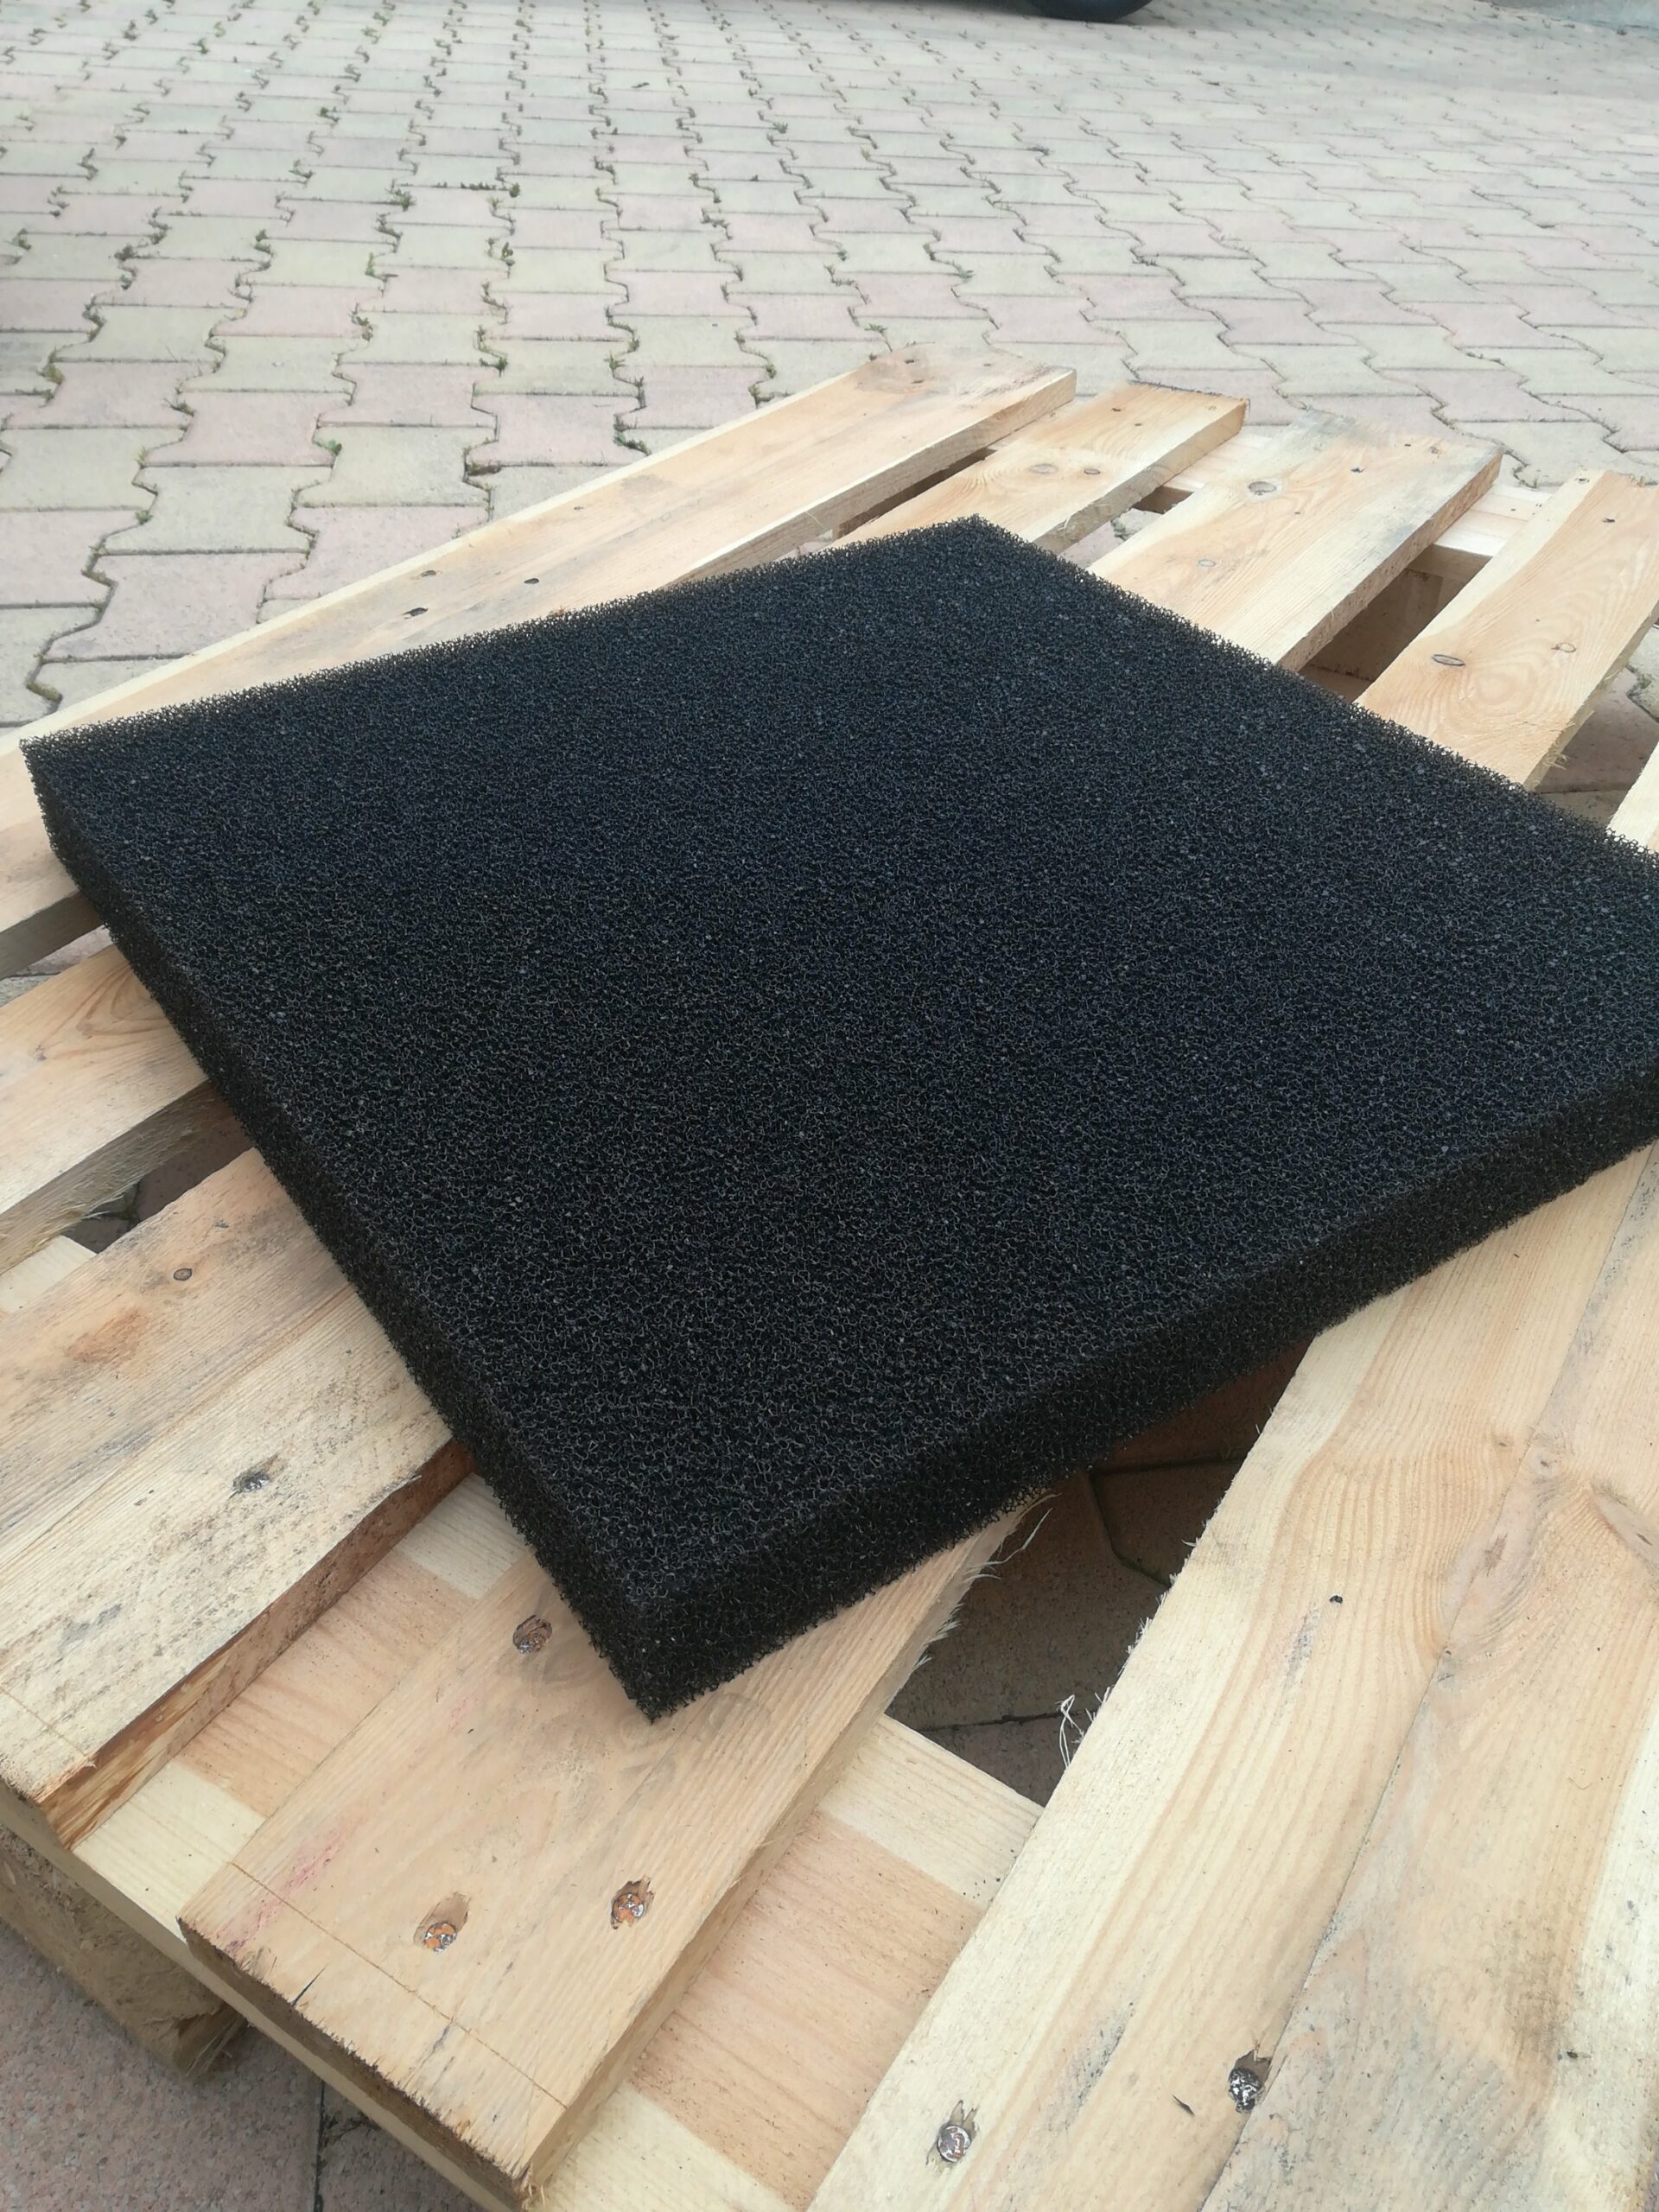 Plaque de mousse de filtre à air noire a découper (32x32x1,0cm)